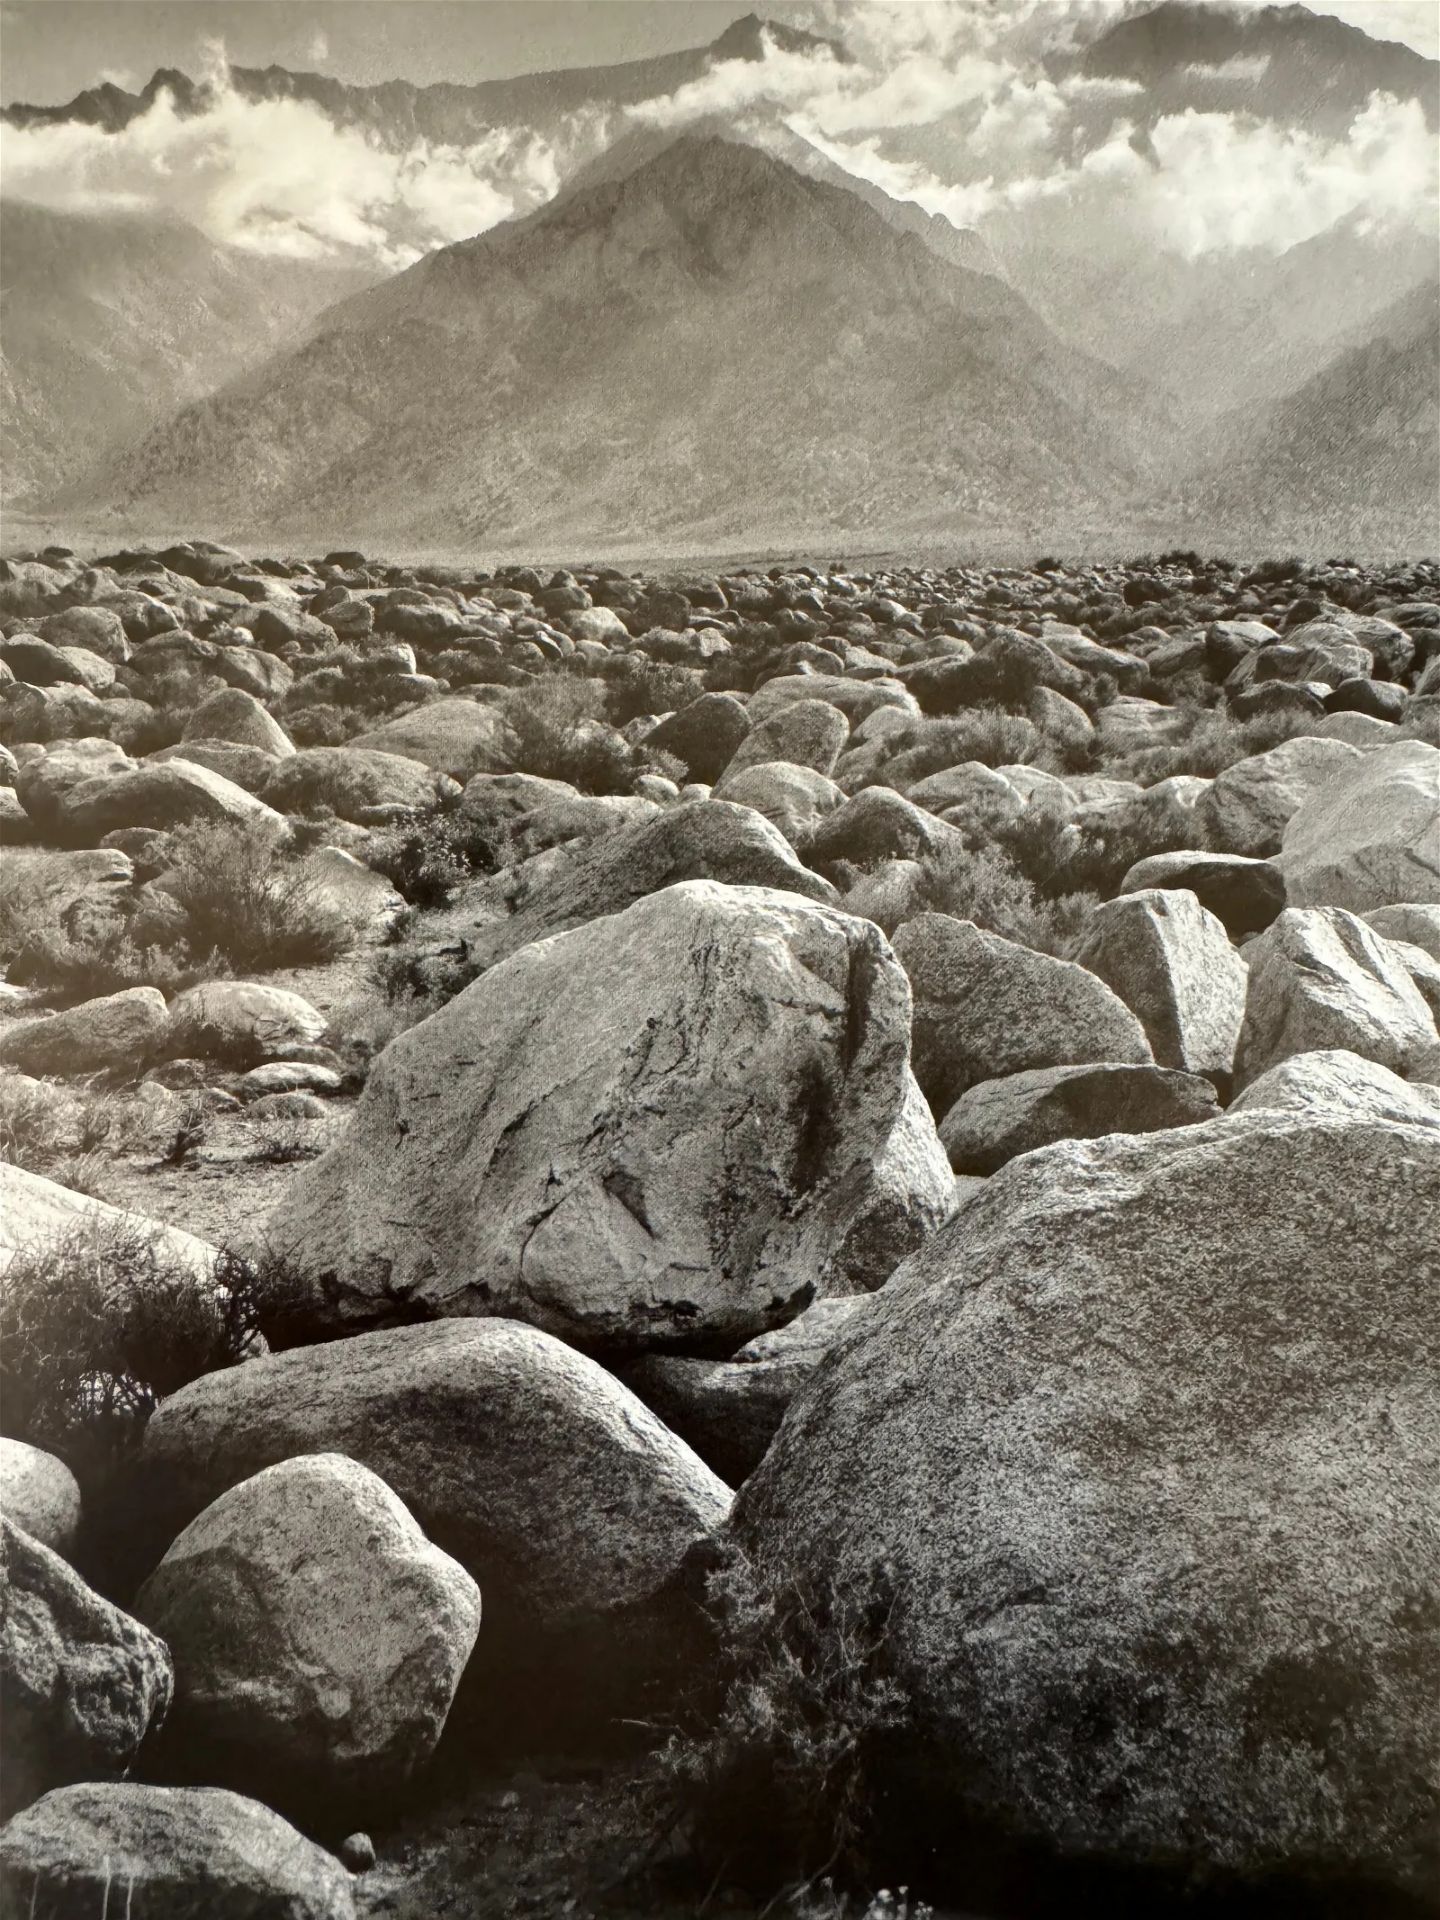 Ansel Adams "Mount Williamson, Sierra Nevada, from Manzanar, 1944" Print - Bild 5 aus 5